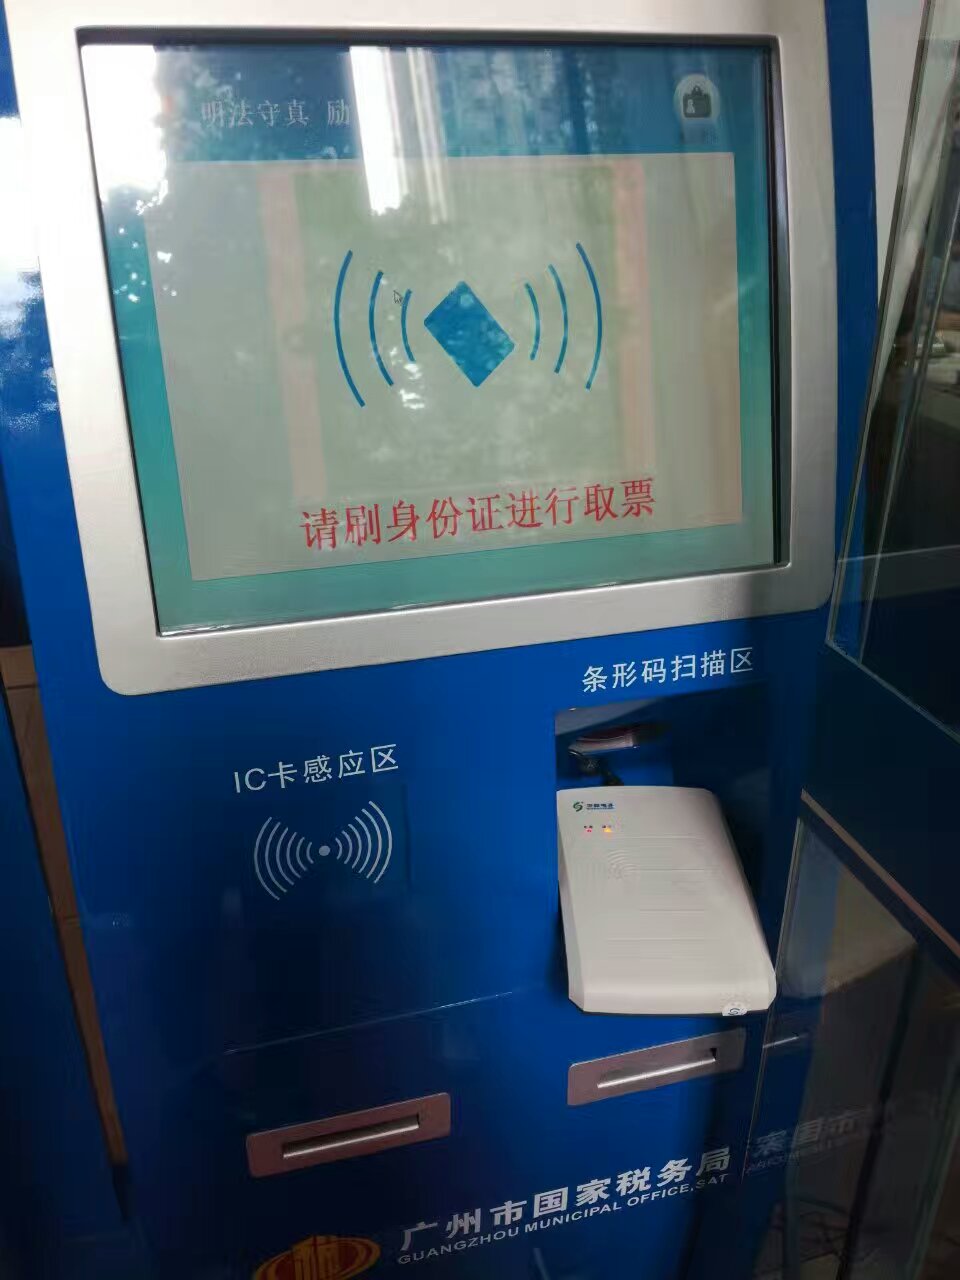 华视CVR-100U身份证阅读器